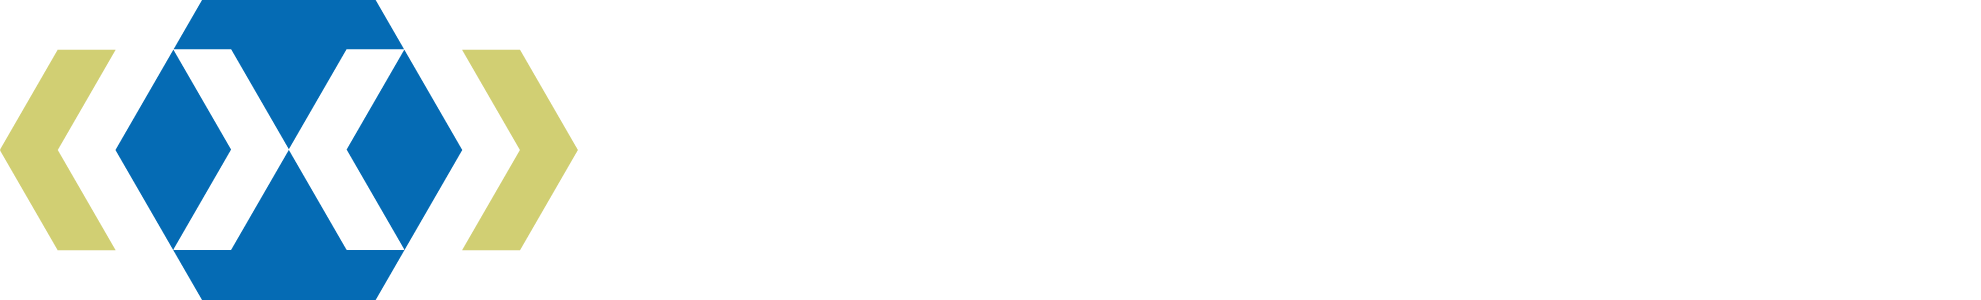 Hexa-X-II